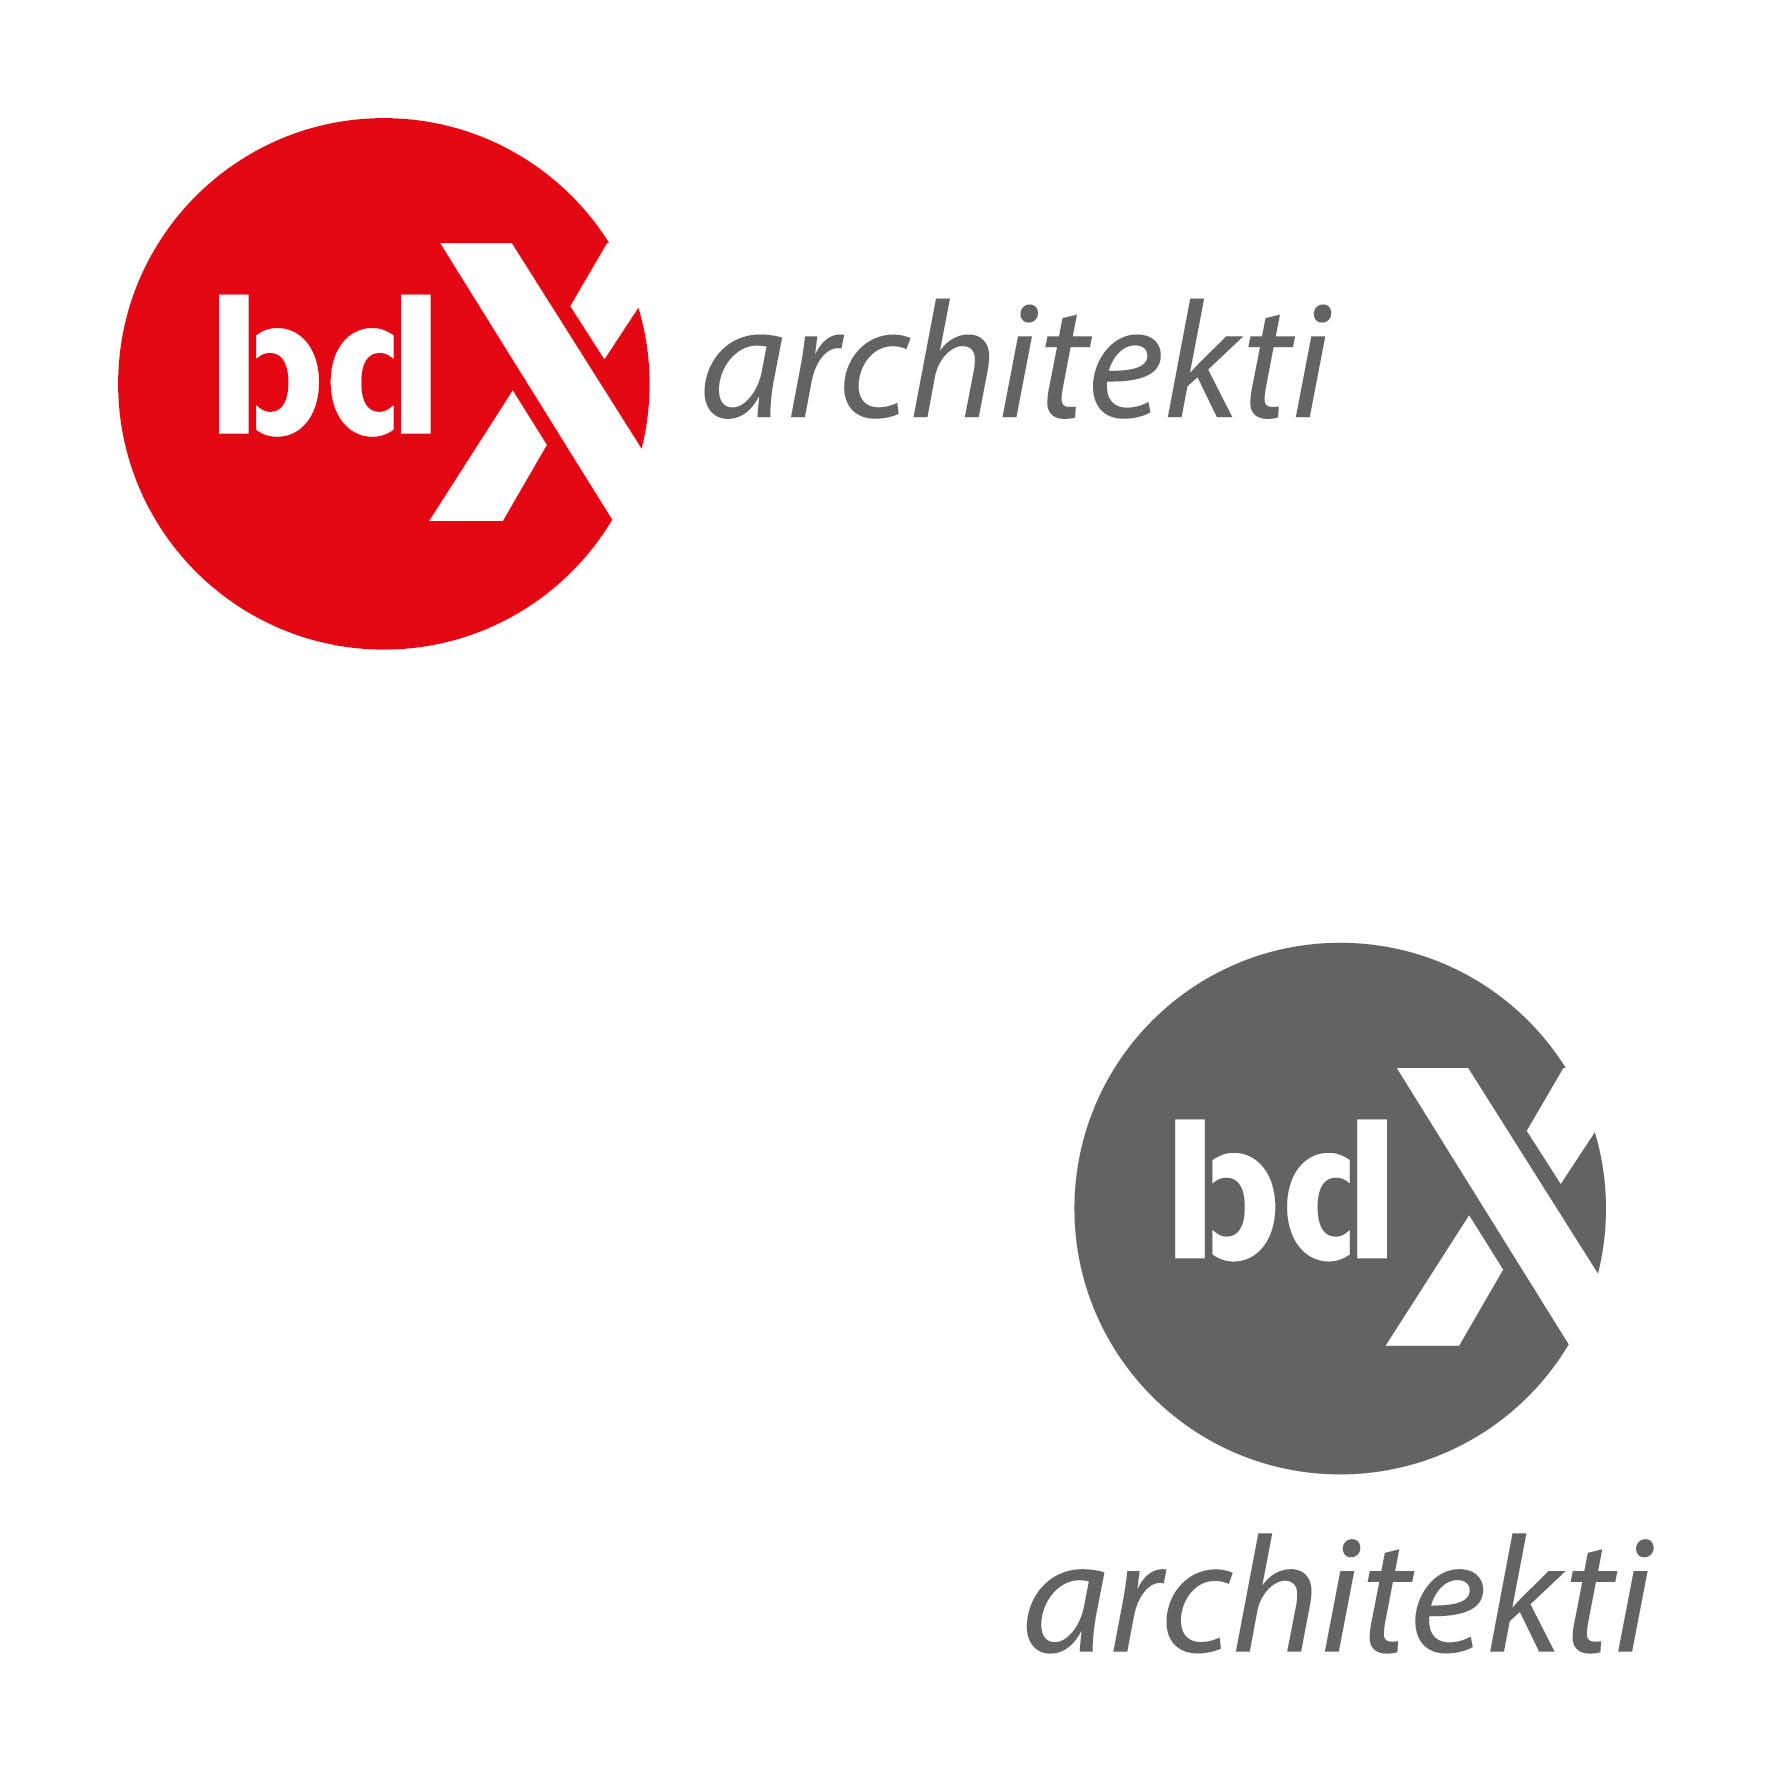 bdX architekti